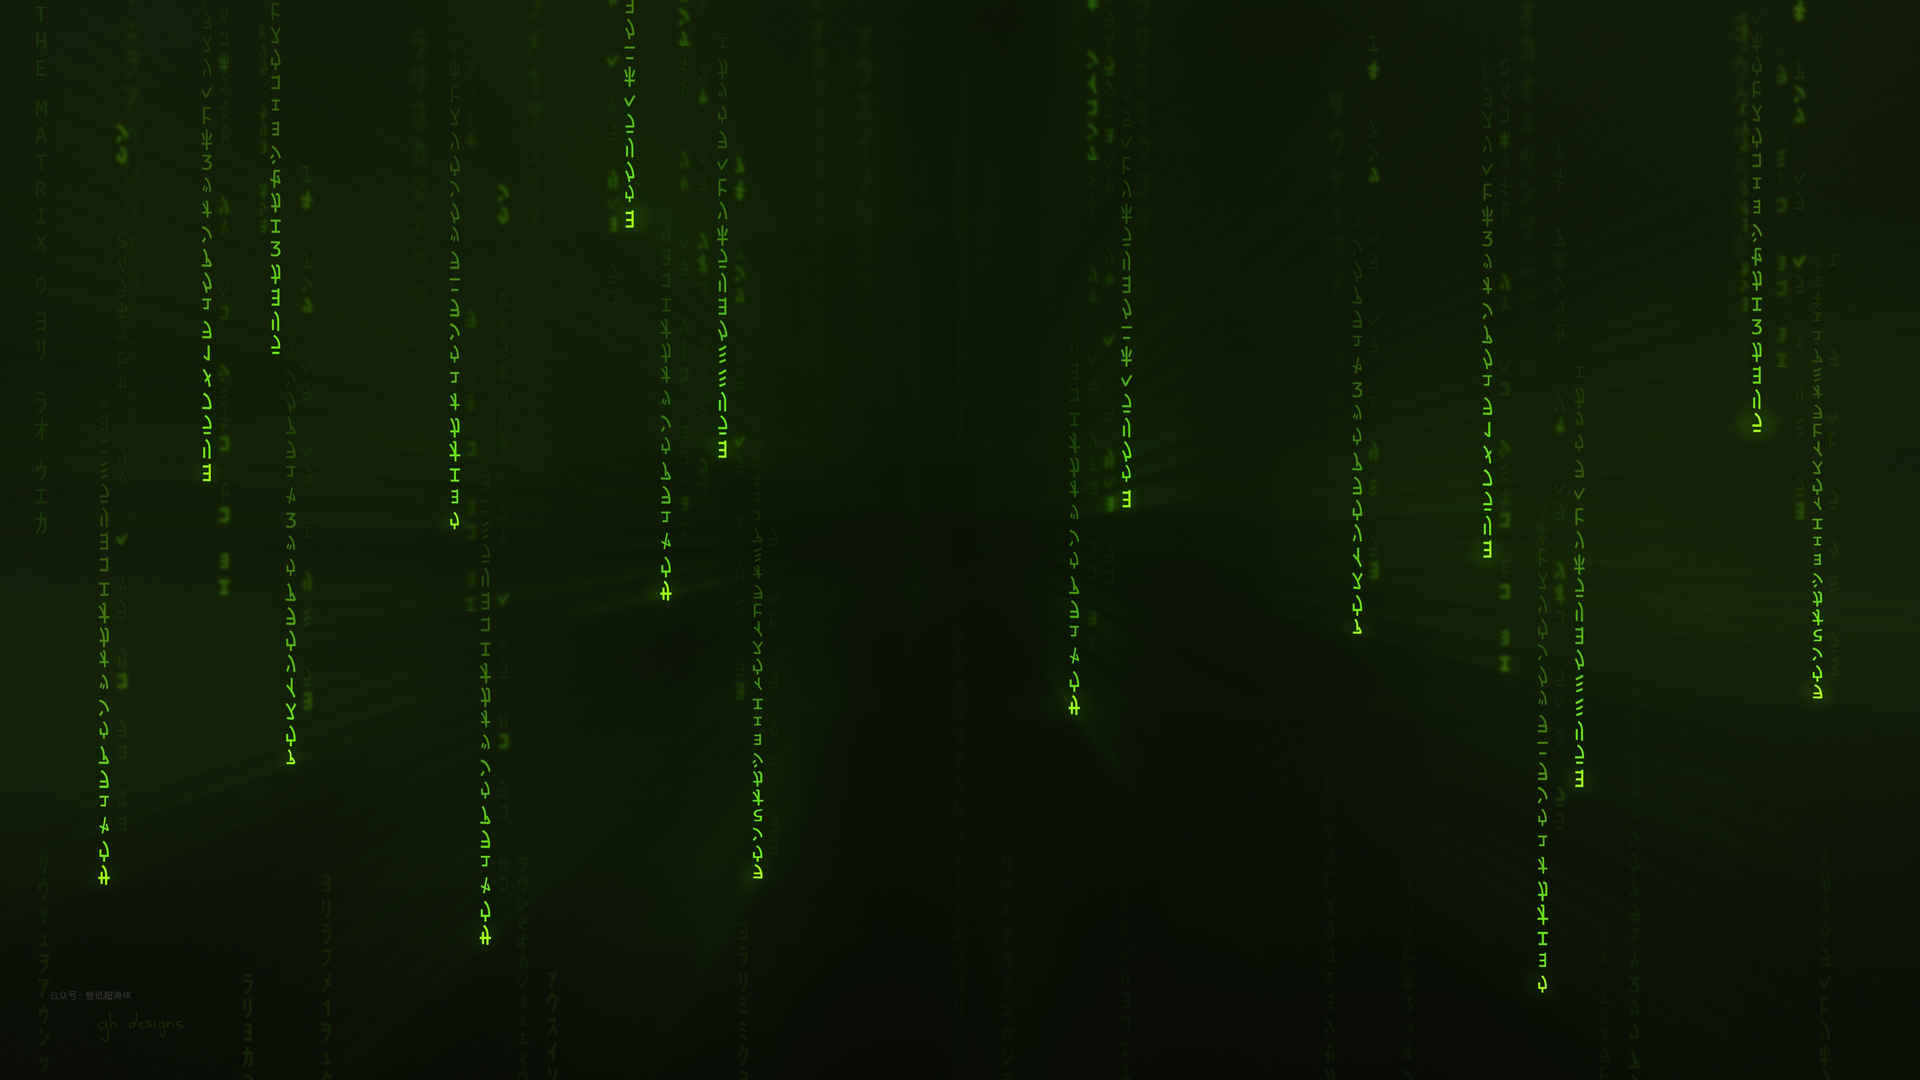 黑客帝国:矩阵重启 绿色编码背景壁纸